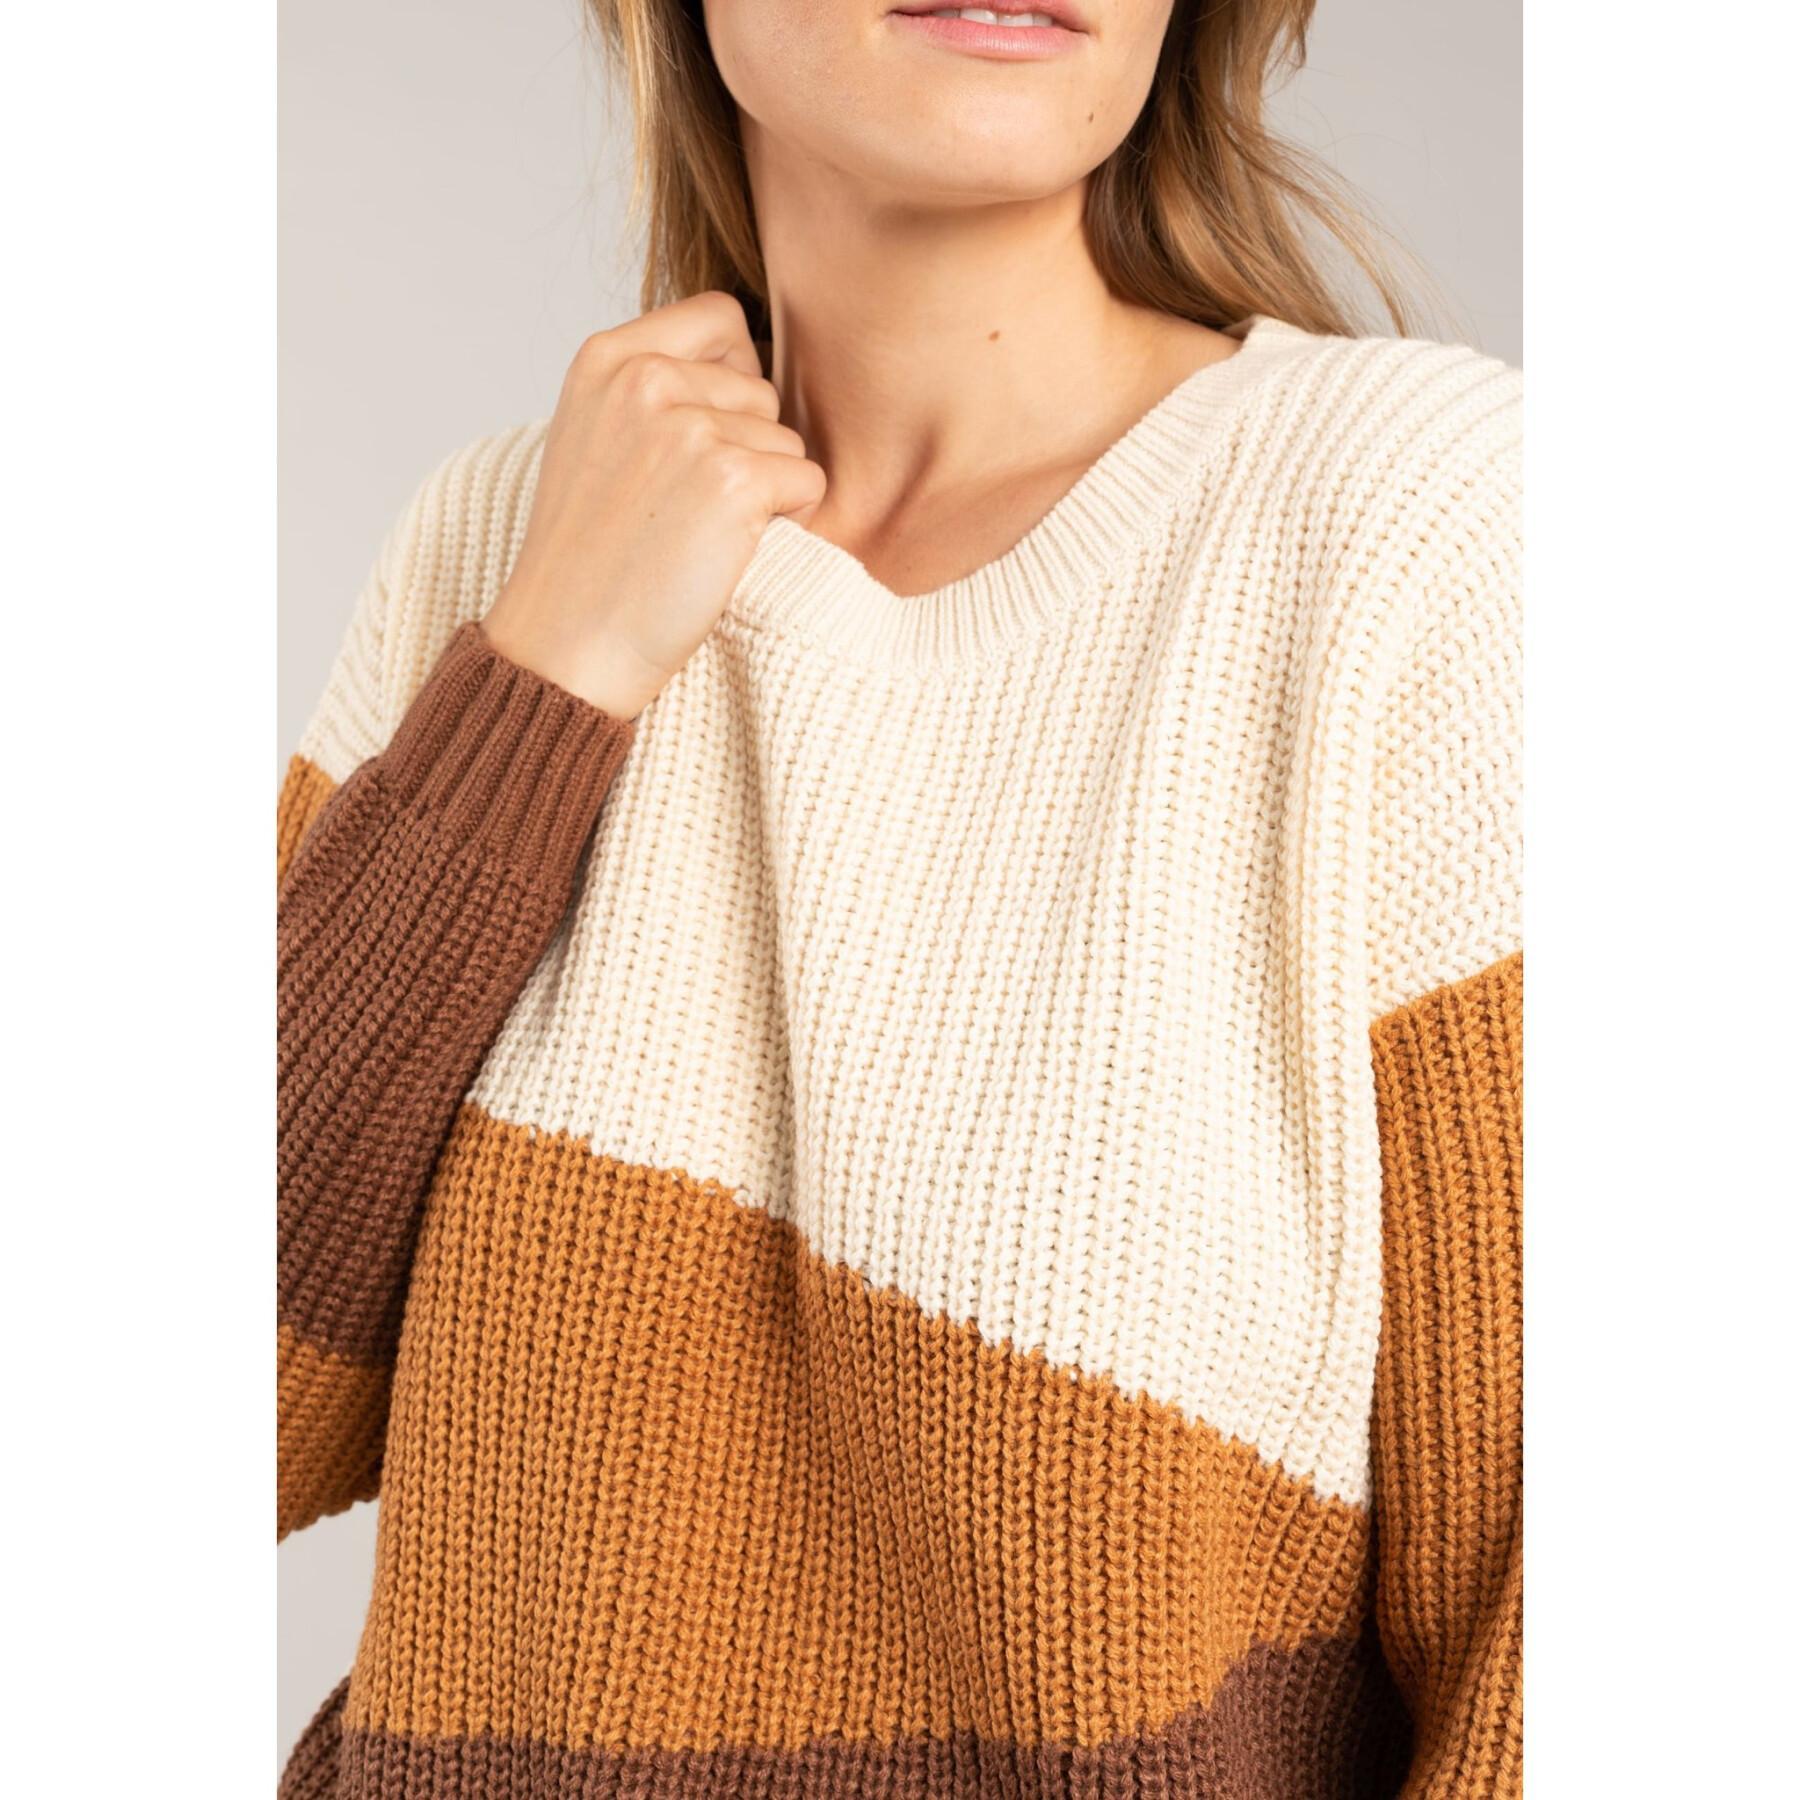 Women's sweater Deeluxe Meline